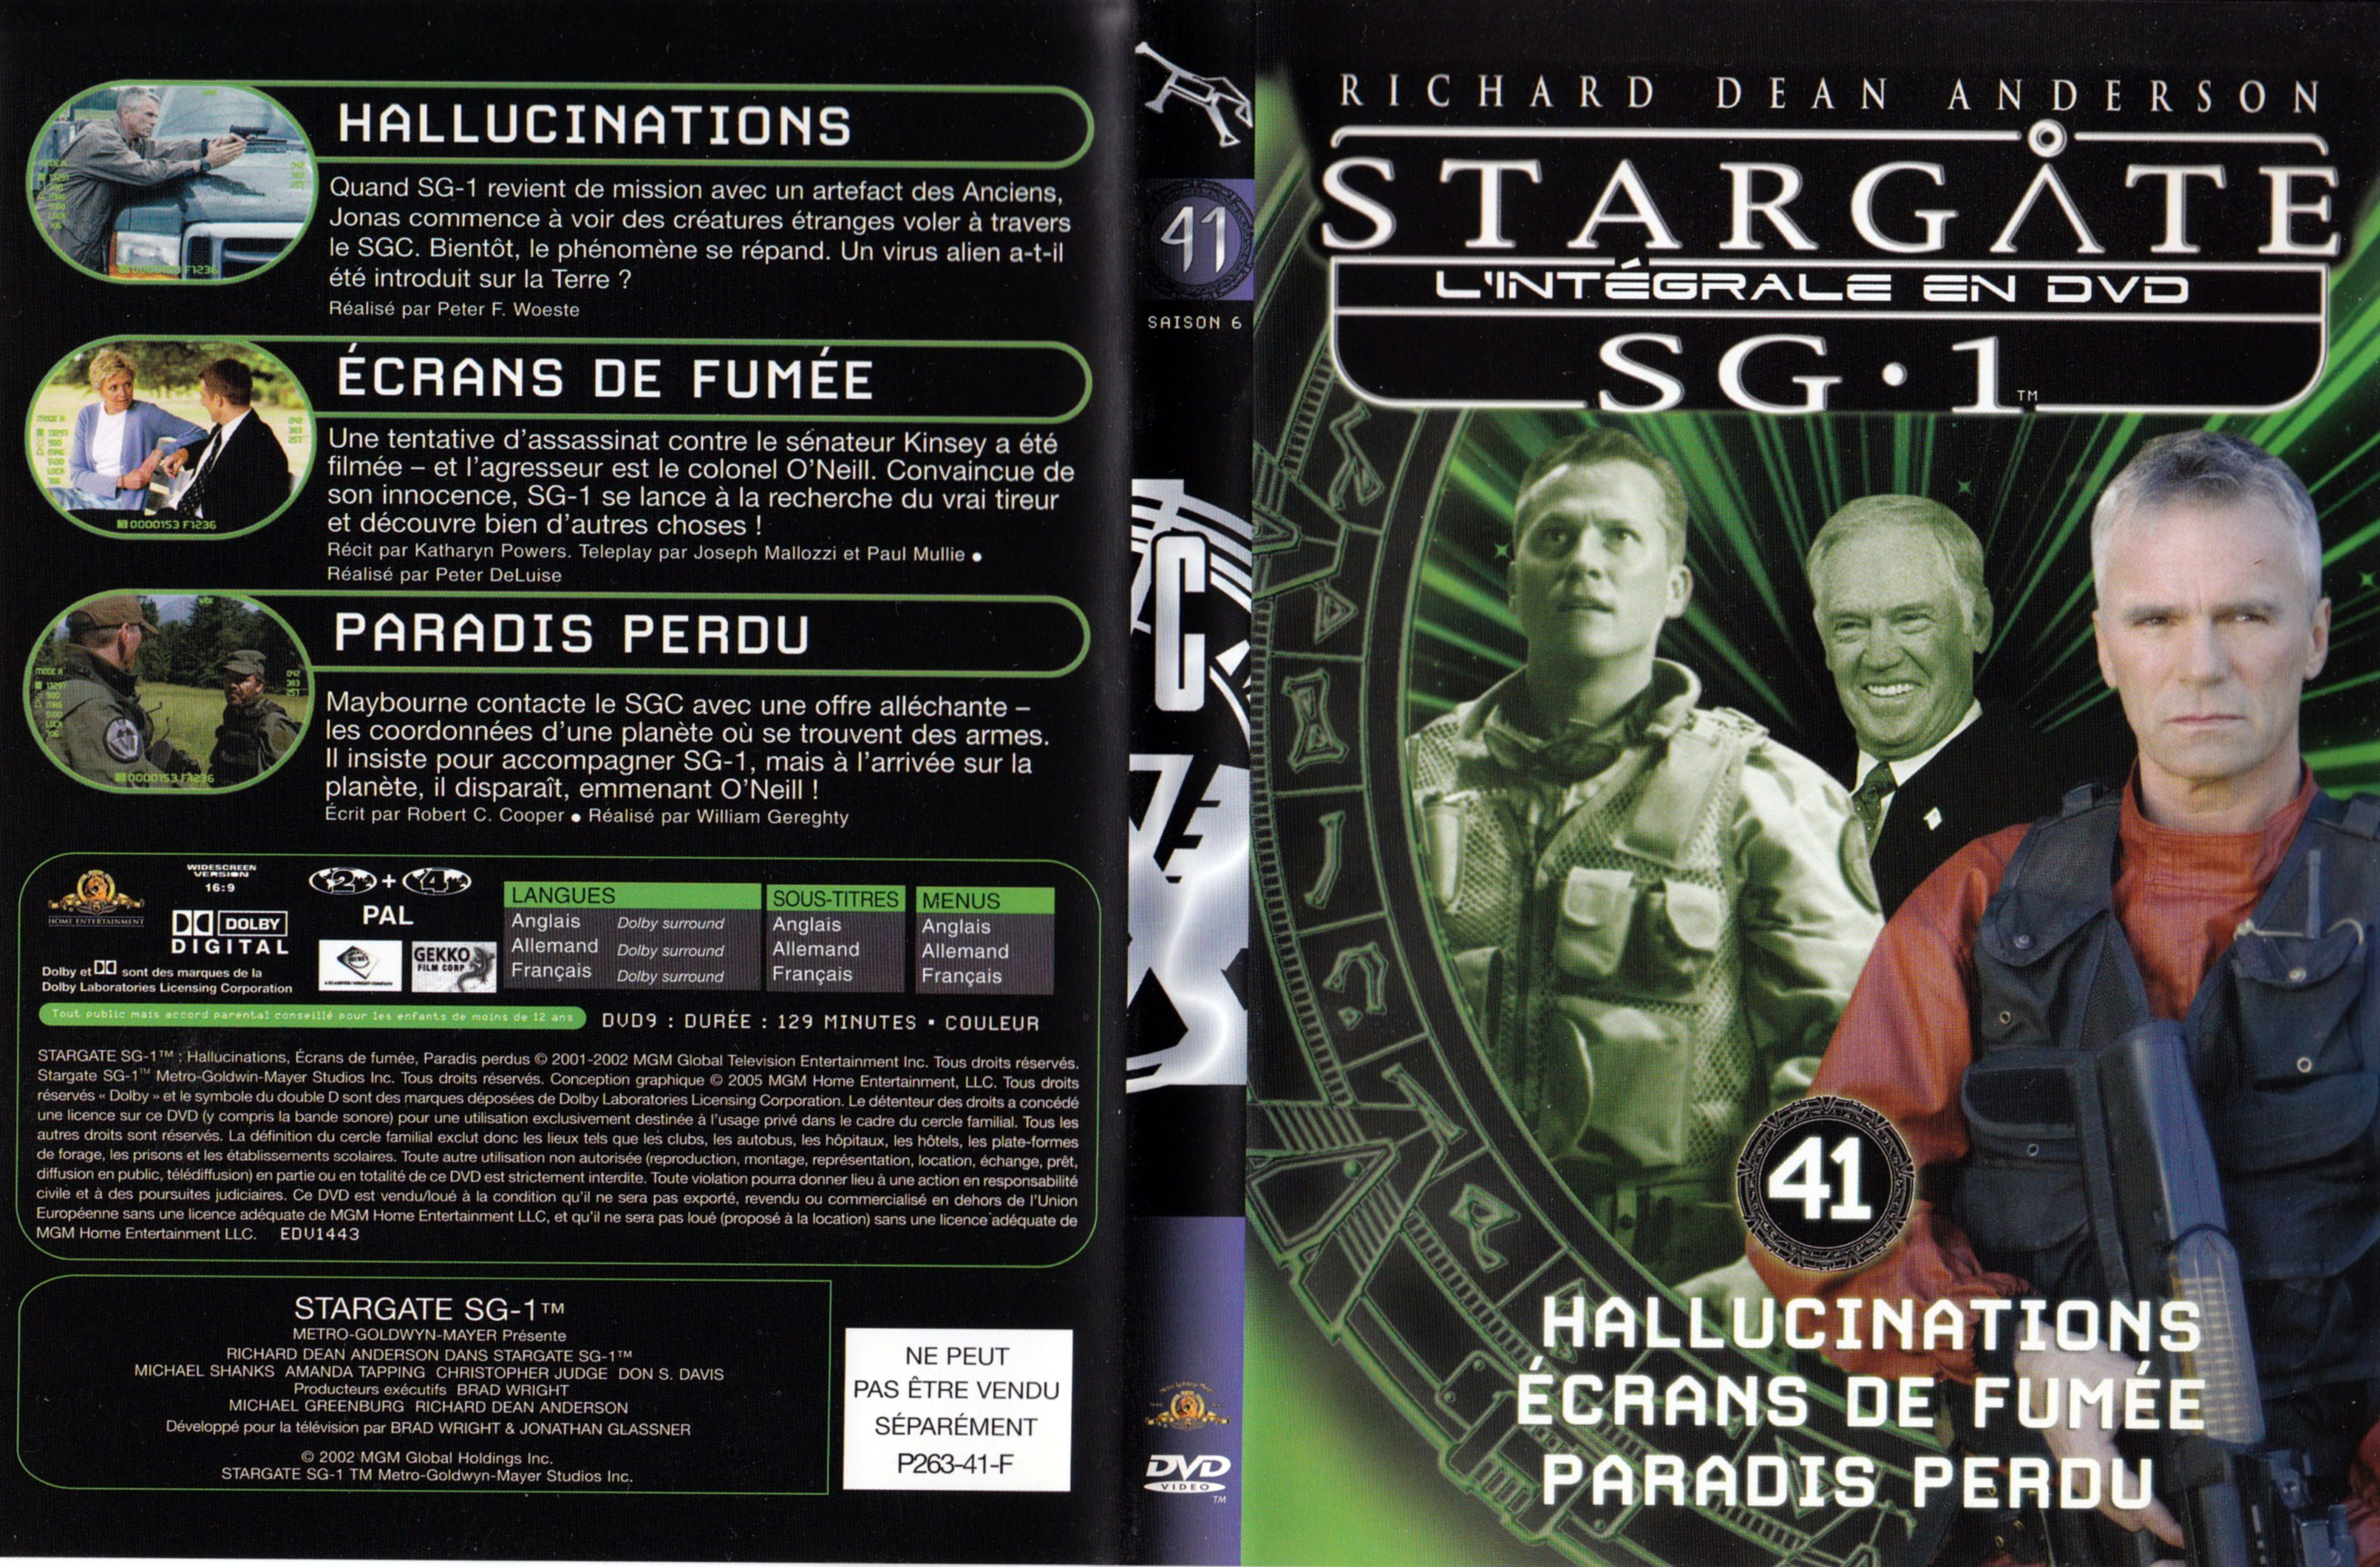 Jaquette DVD Stargate SG1 Intgrale Saison 6 vol 41